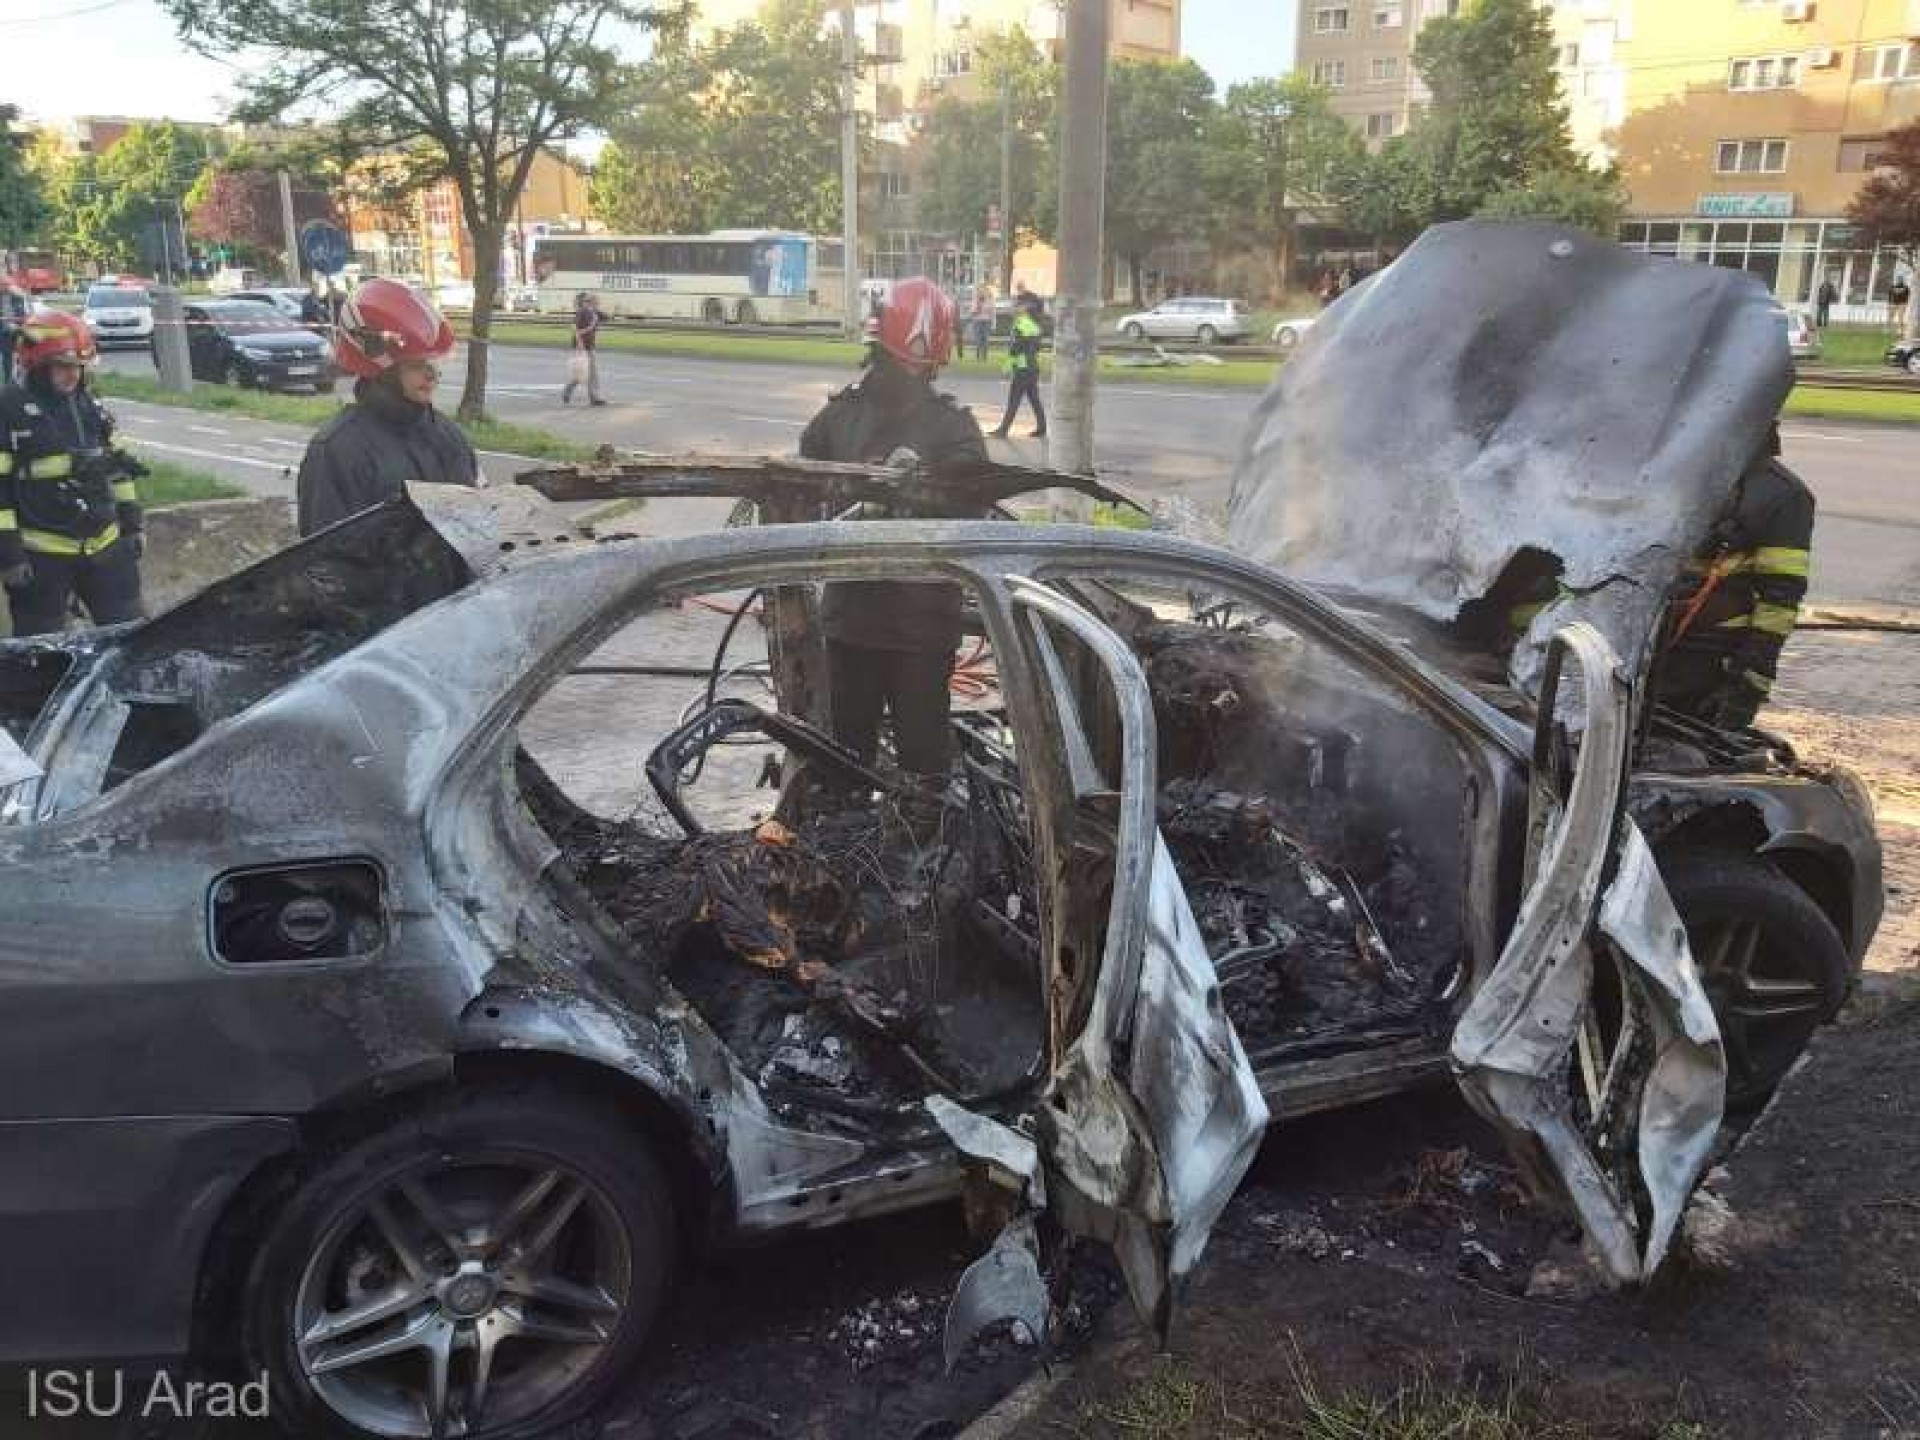 Explozie de maşină, după ce ar fi fost incendiată; persoană carbonizată găsită în interior